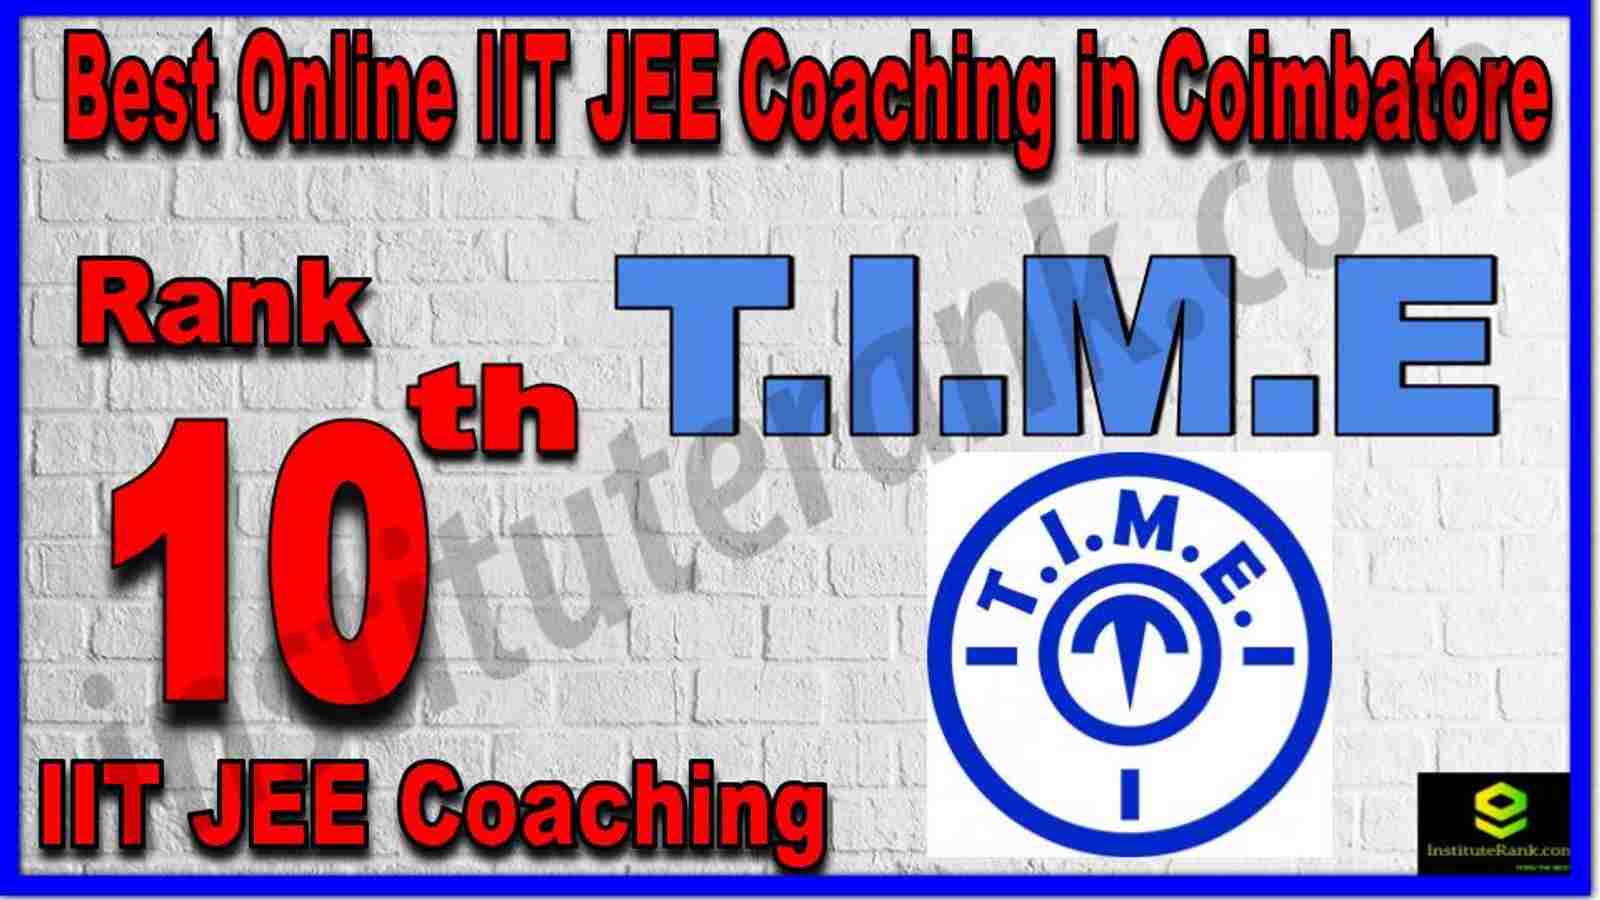 Rank 10th Best Online IIT JEE Coaching in Coimbatore